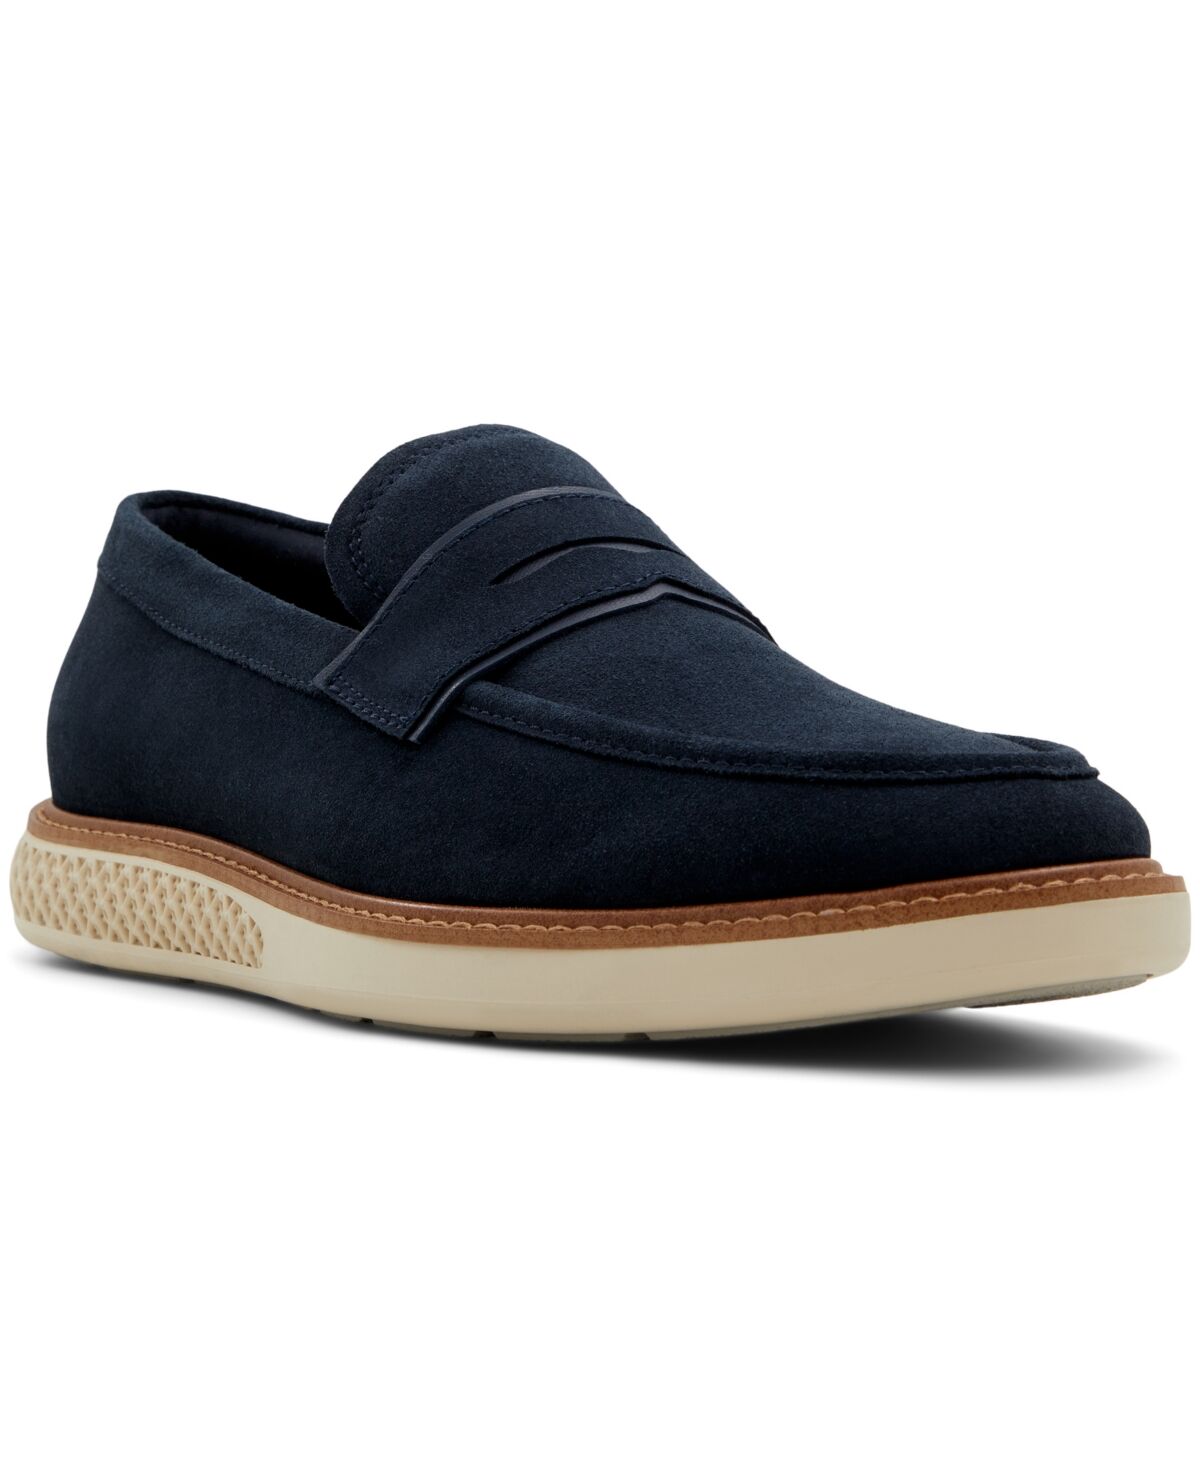 Aldo Men's Loafstroll Slip On Shoes - Navy